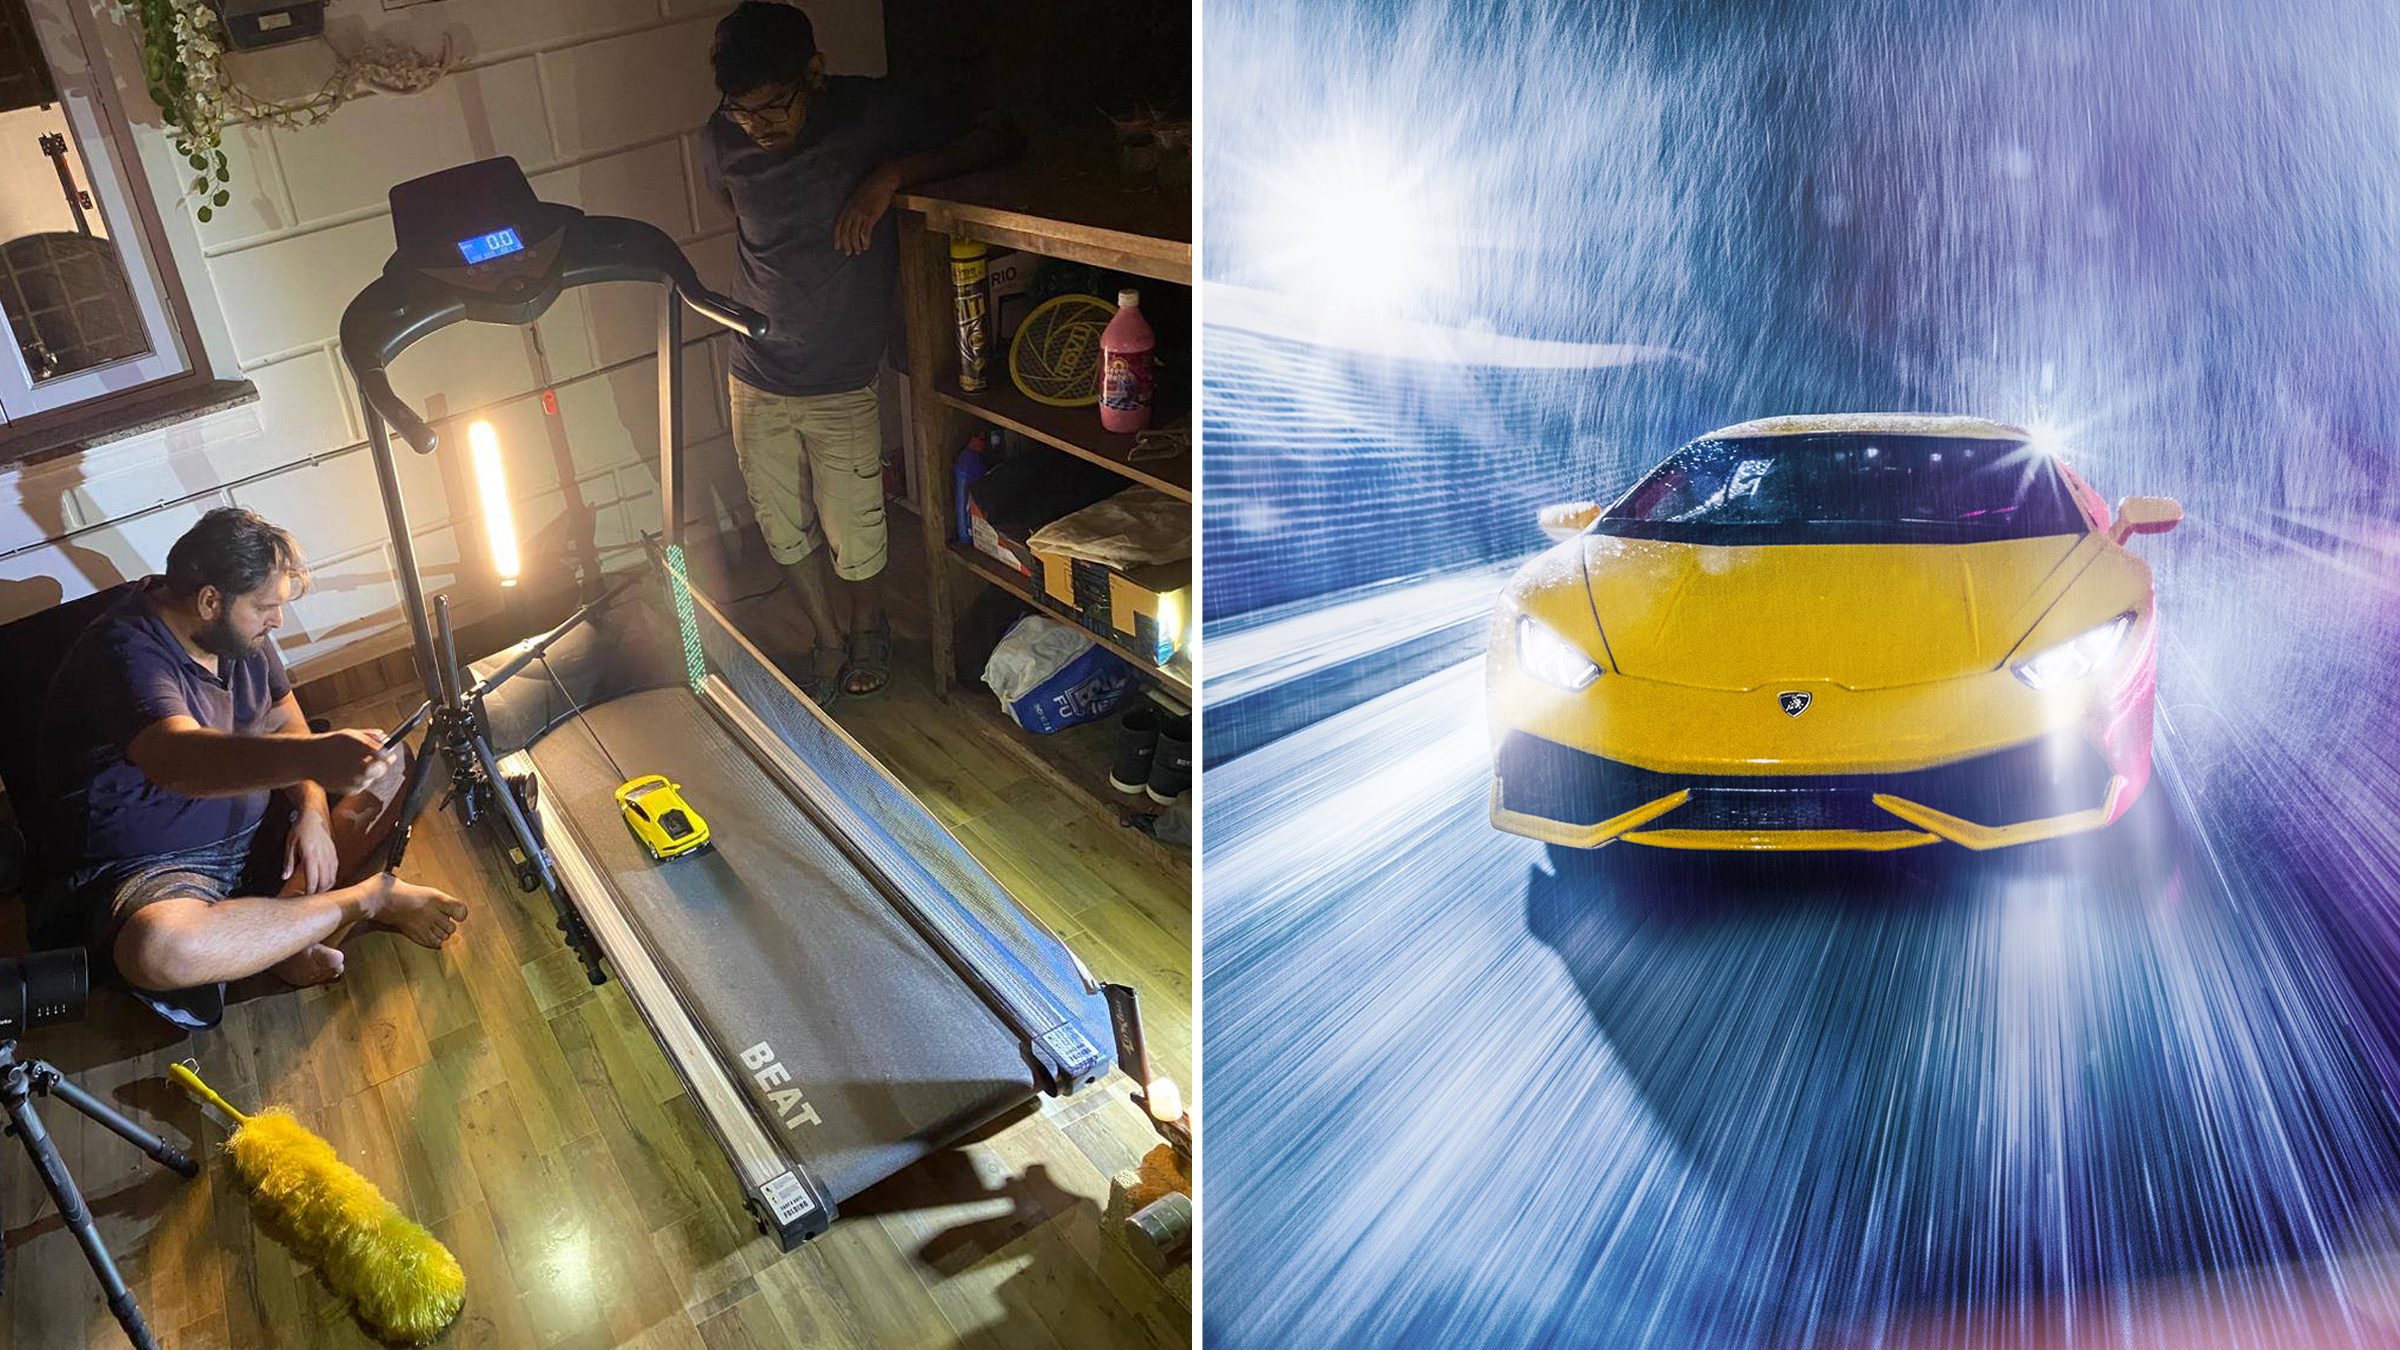 Ce photographe met en scène une Lamborghini miniature sur un tapis de course